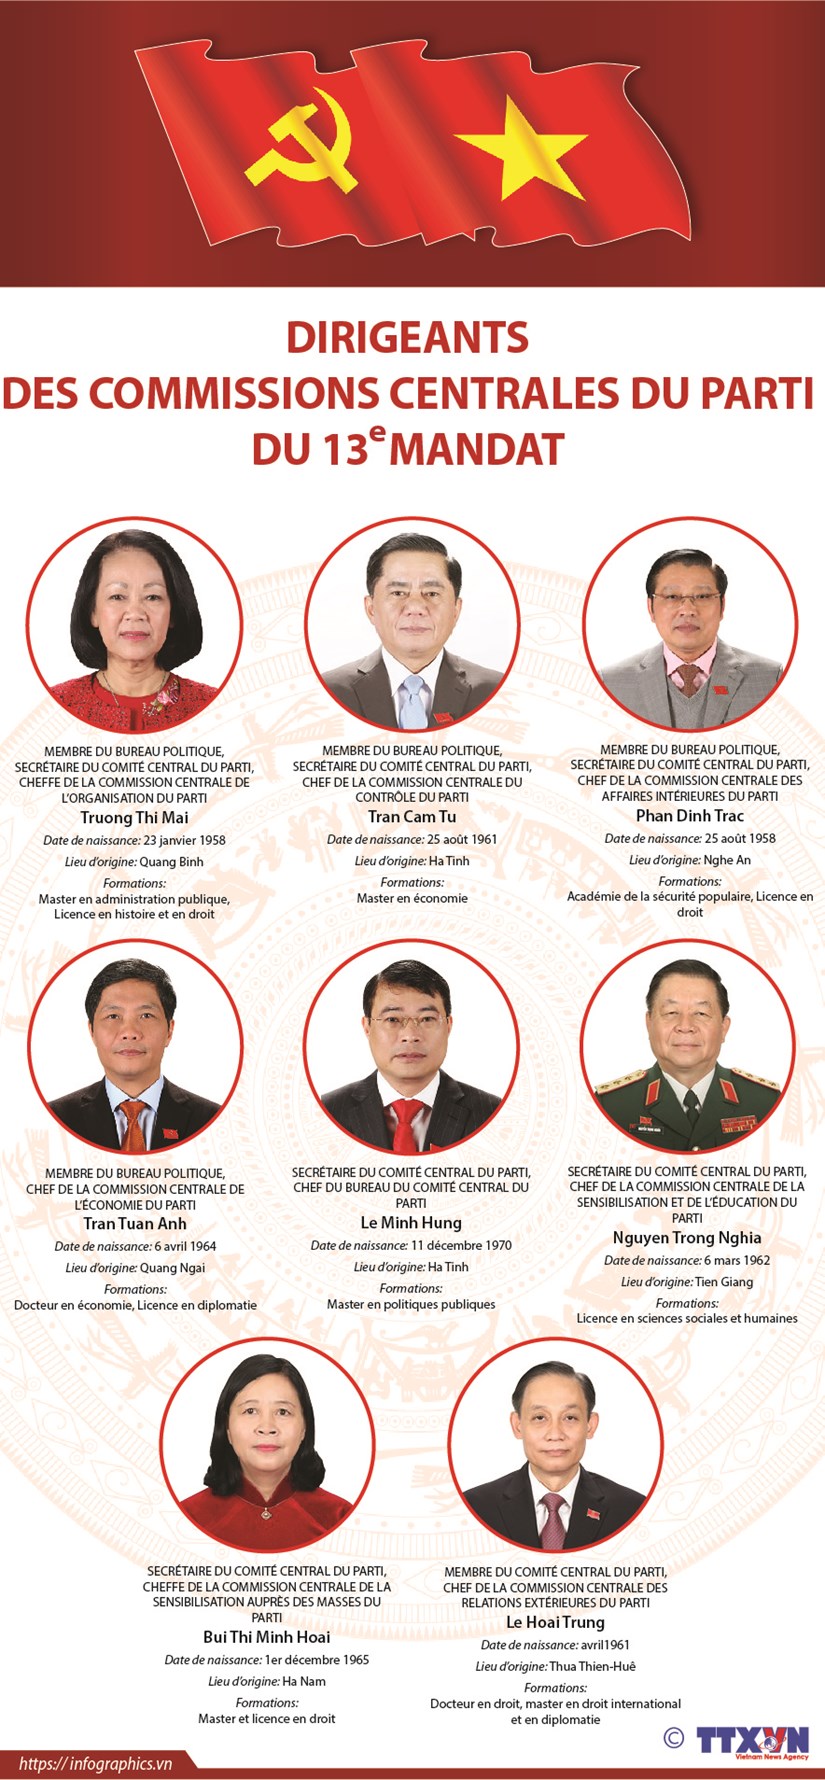 Les dirigeants des Commissions centrales du Parti du 13e mandat hinh anh 1